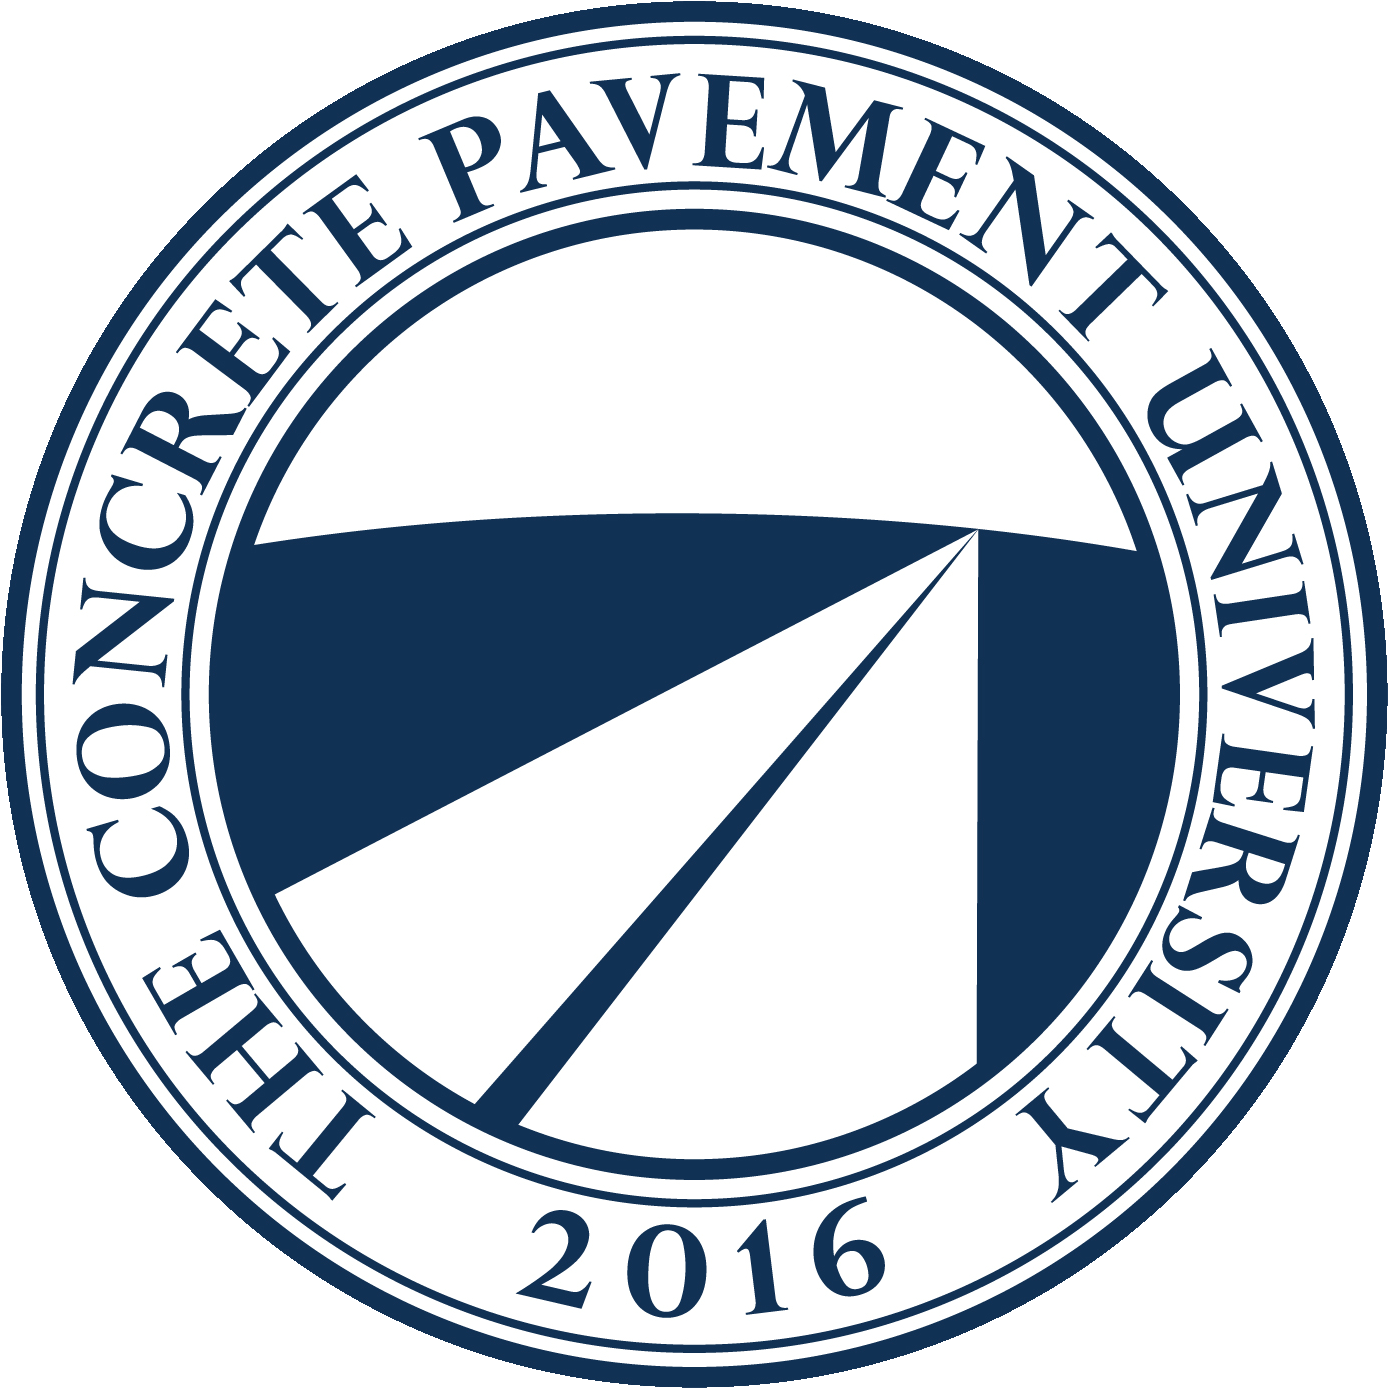 Final Concrete Pavement University Logo Rgb 2016 Transparent - 100 Natural Logo Vector (1440x1440), Png Download